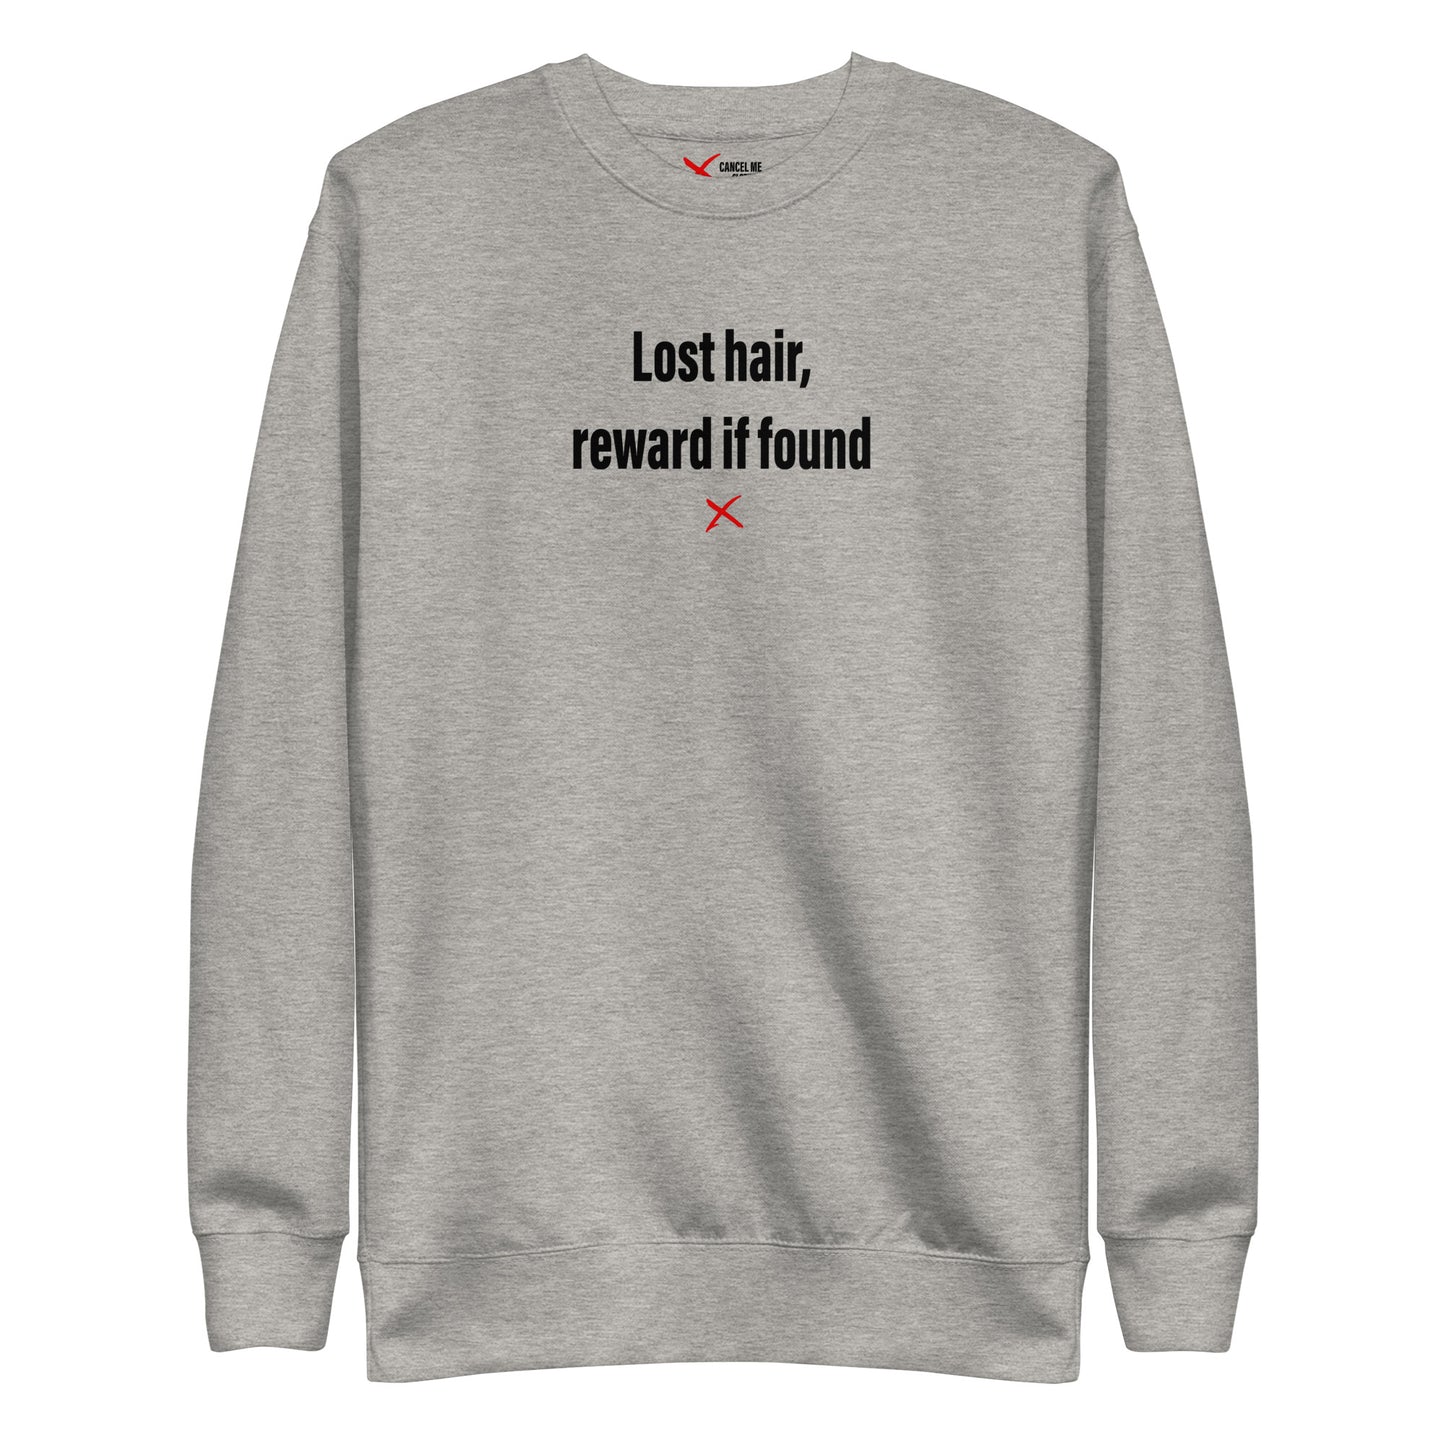 Lost hair, reward if found - Sweatshirt